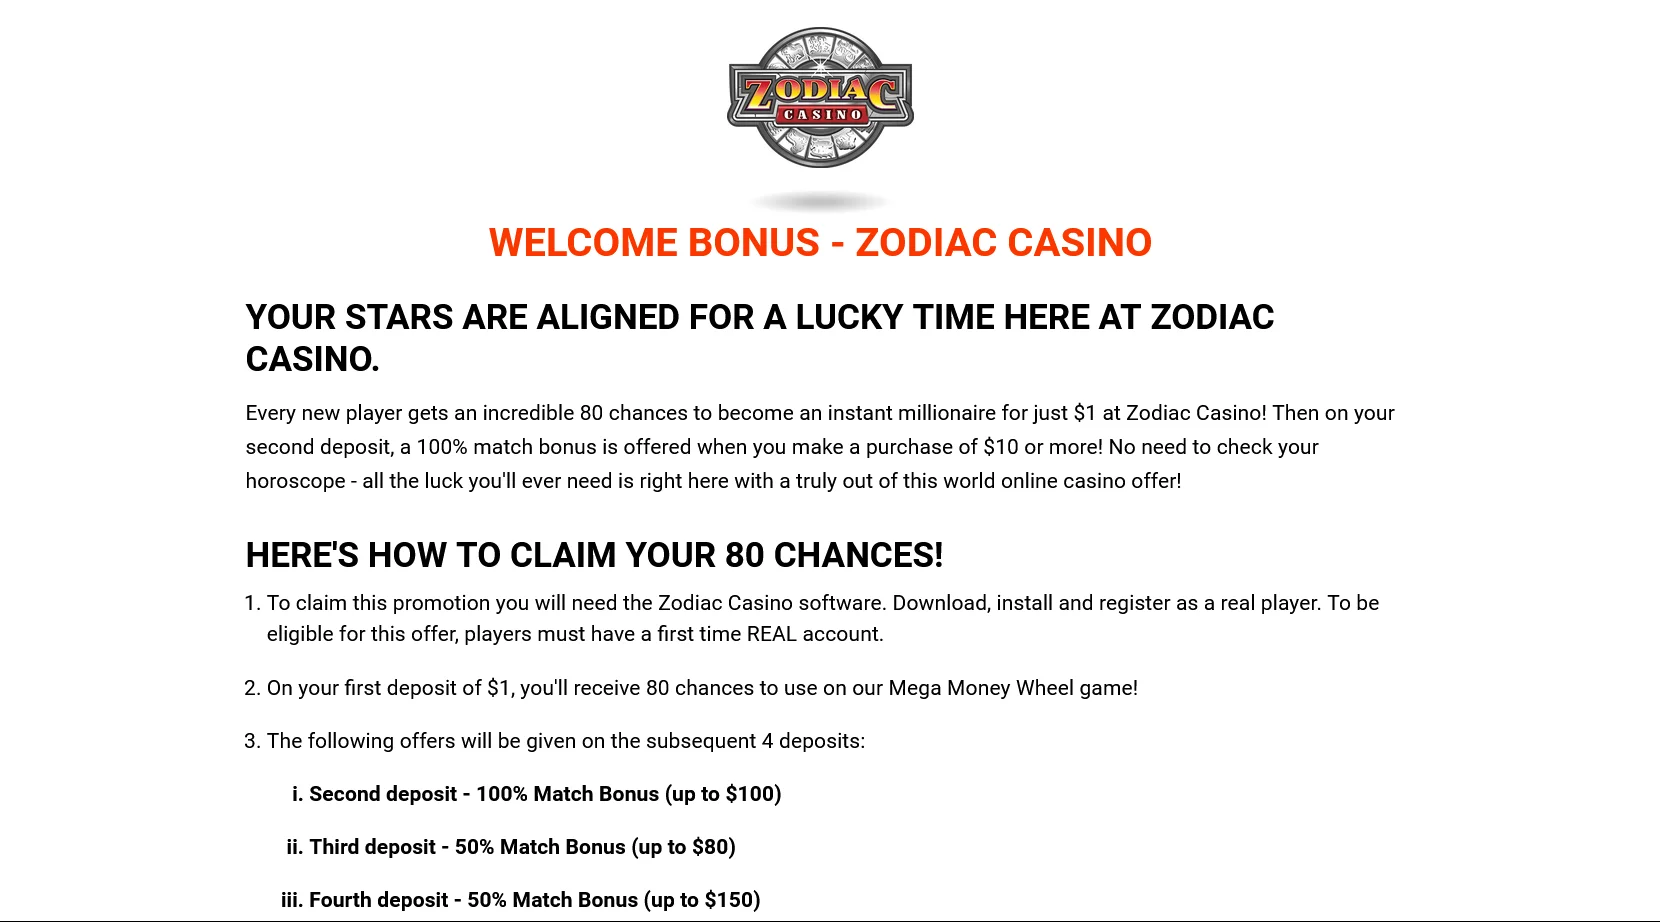 Operaciones financieras y seguridad en Zodiac Casino